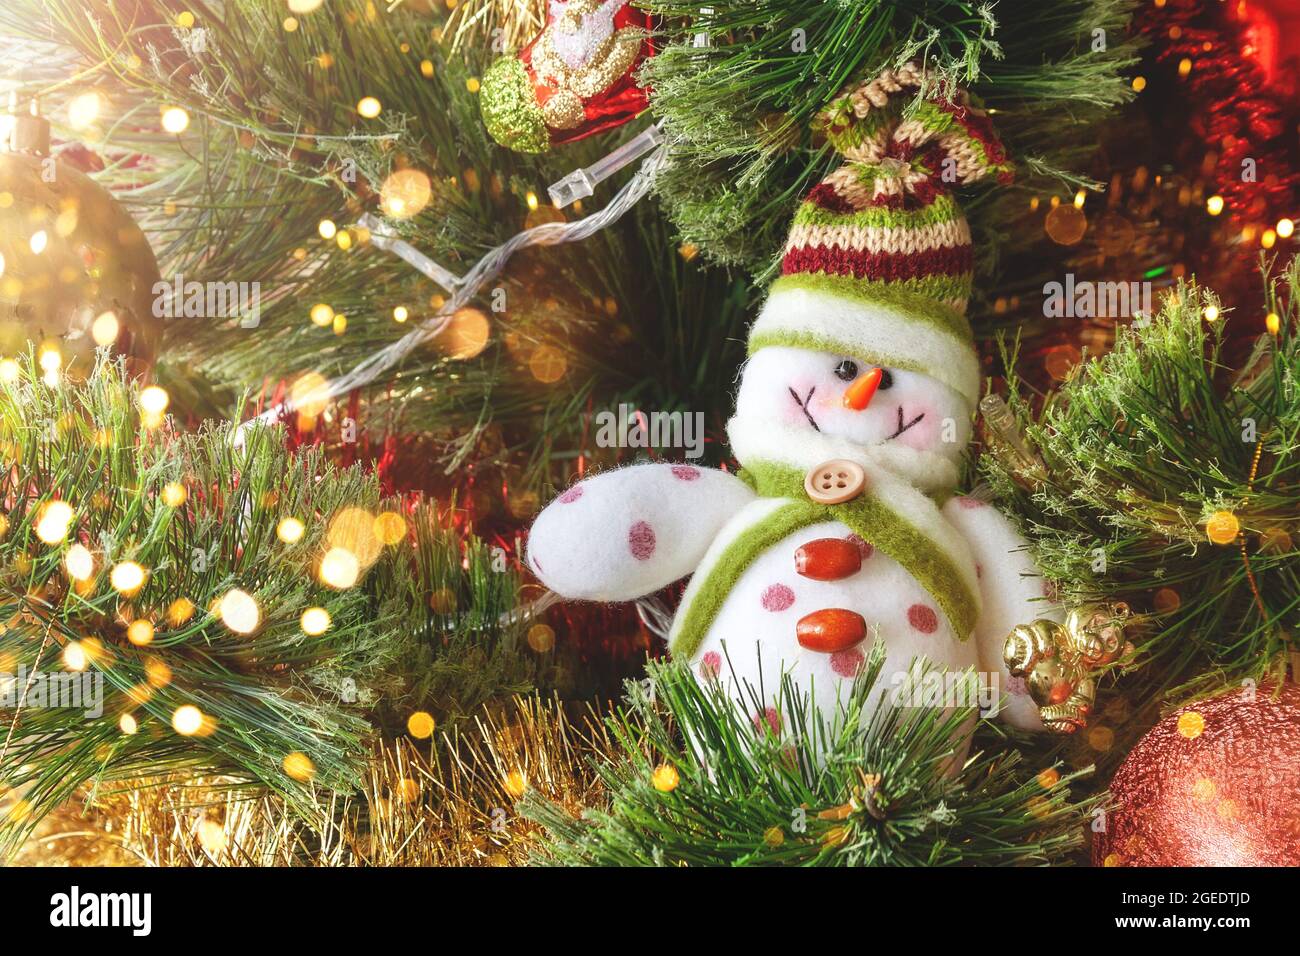 Lächelnder Schneemann aus Textil auf dem Weihnachtsbaum mit bunten, unscharfen Lichtern. Selektiver Fokus. Weihnachtskarte mit Dekorationen für den Silvesterabend Stockfoto